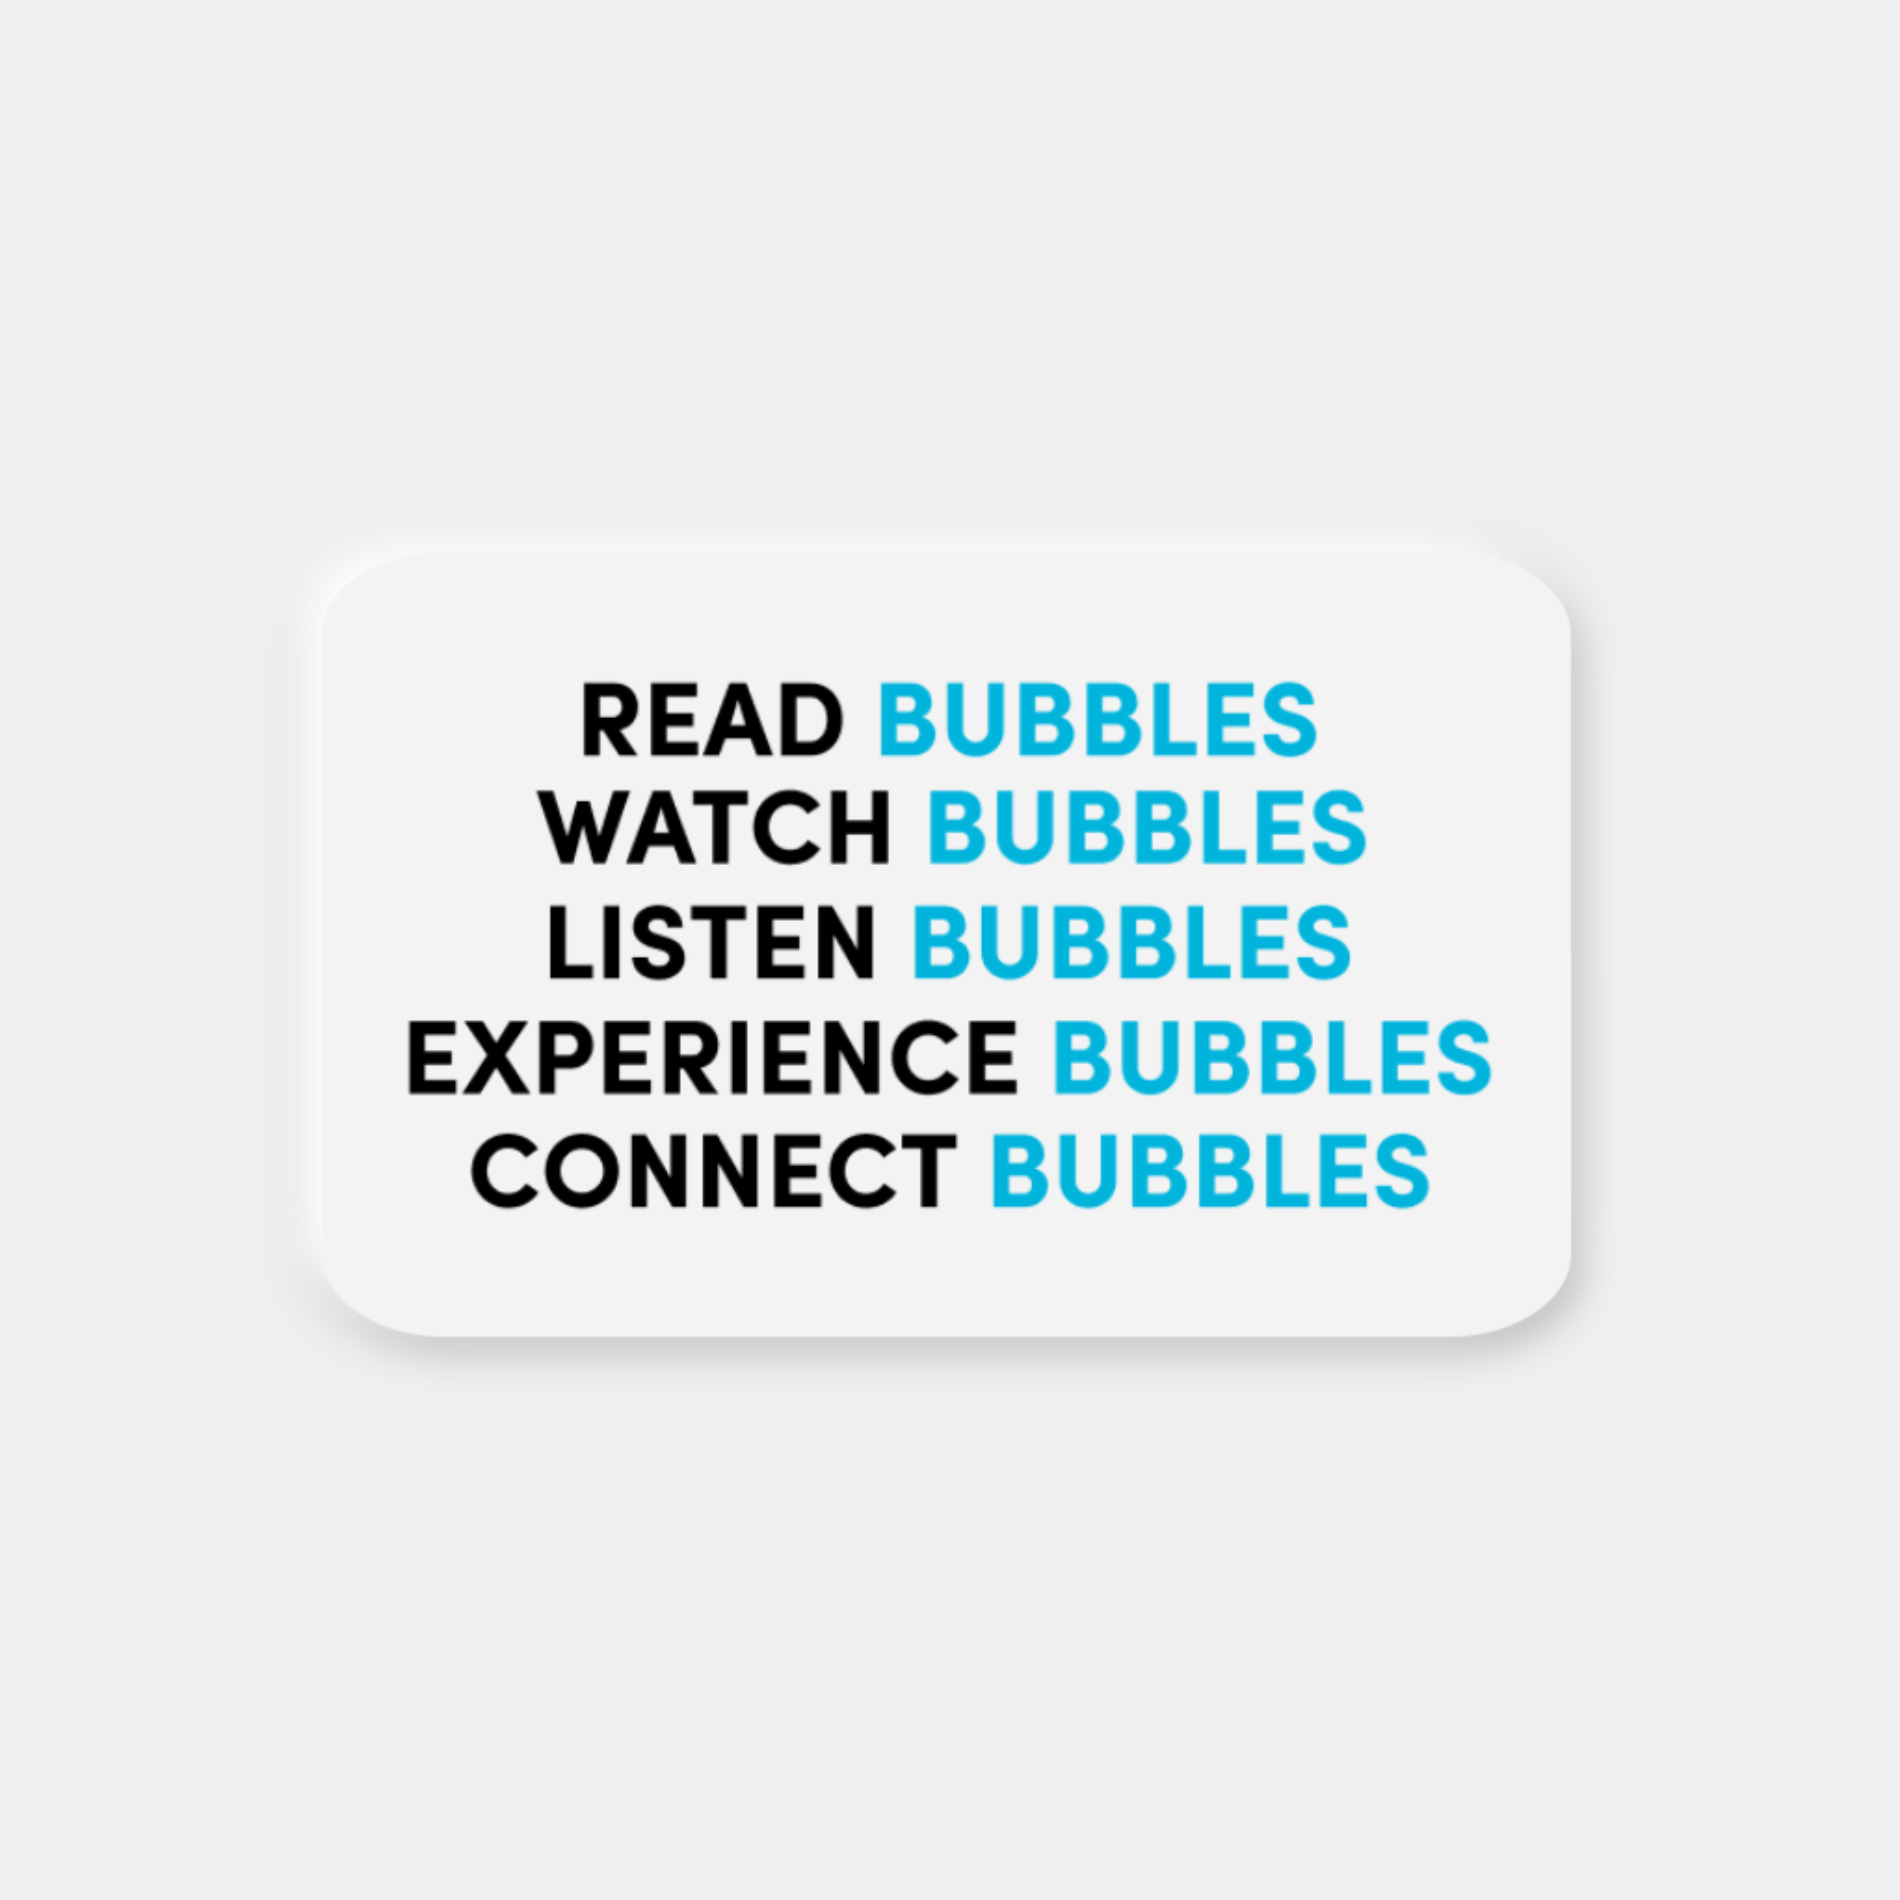 Con Bubbles l’arte diventa esperienza digitale